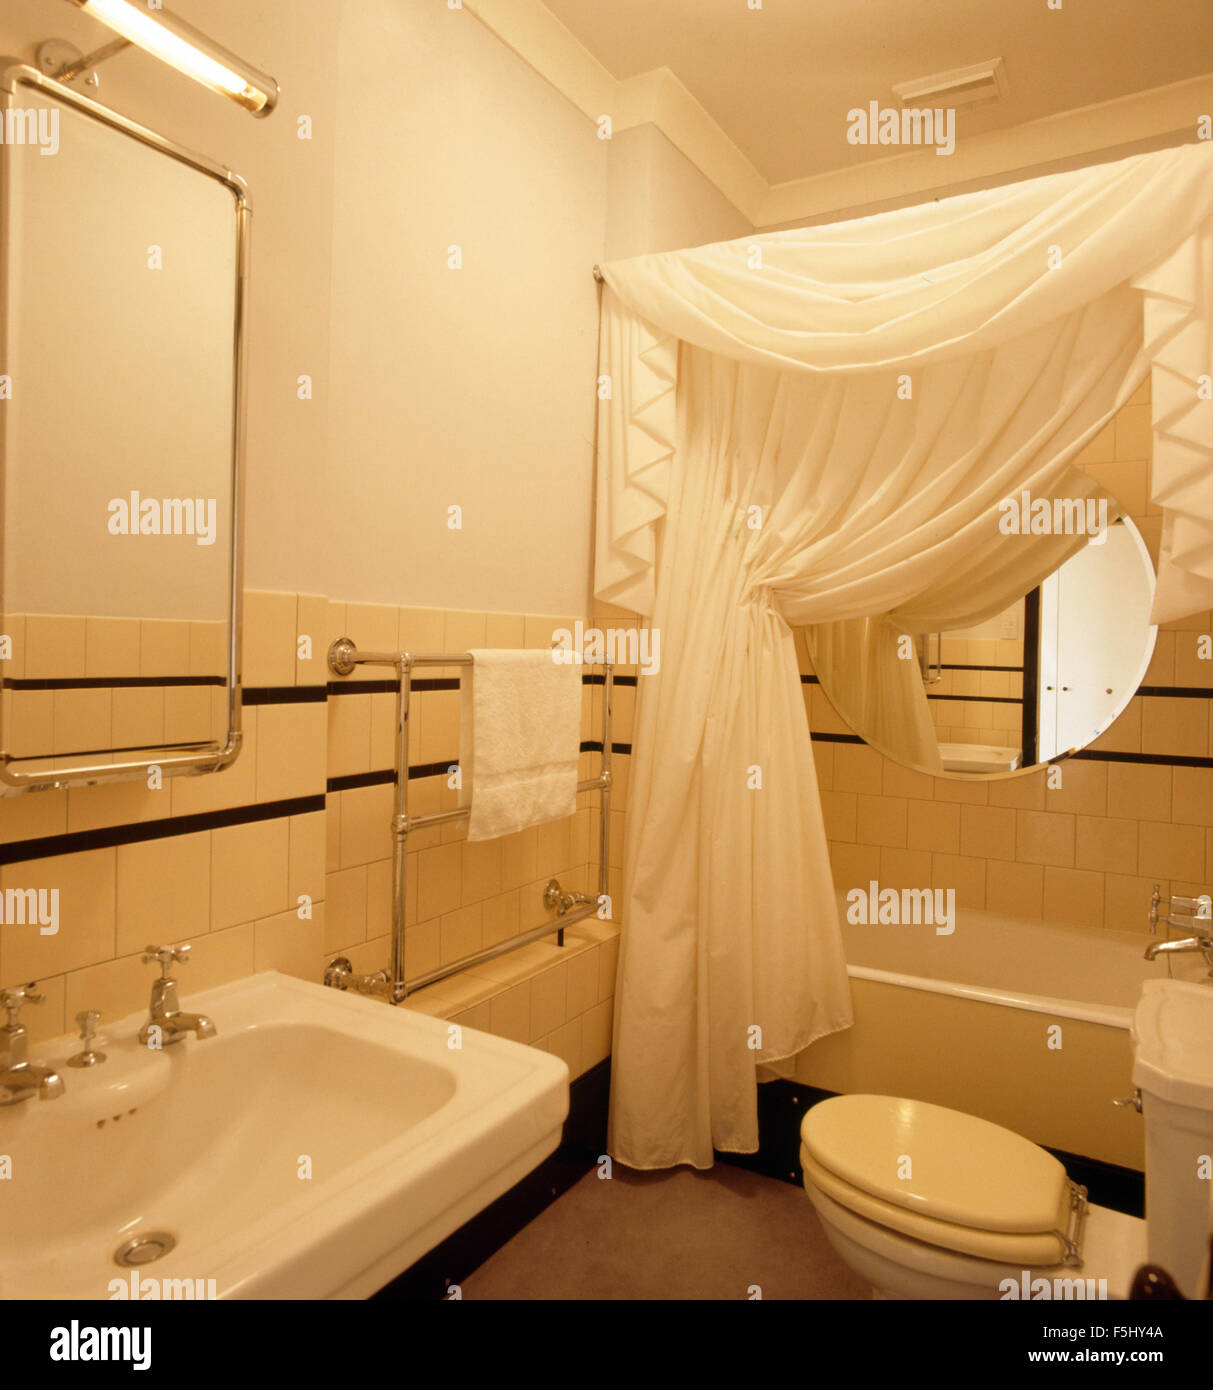 Rideaux blancs sur baignoire dans salle de bains de style années 30 Banque D'Images